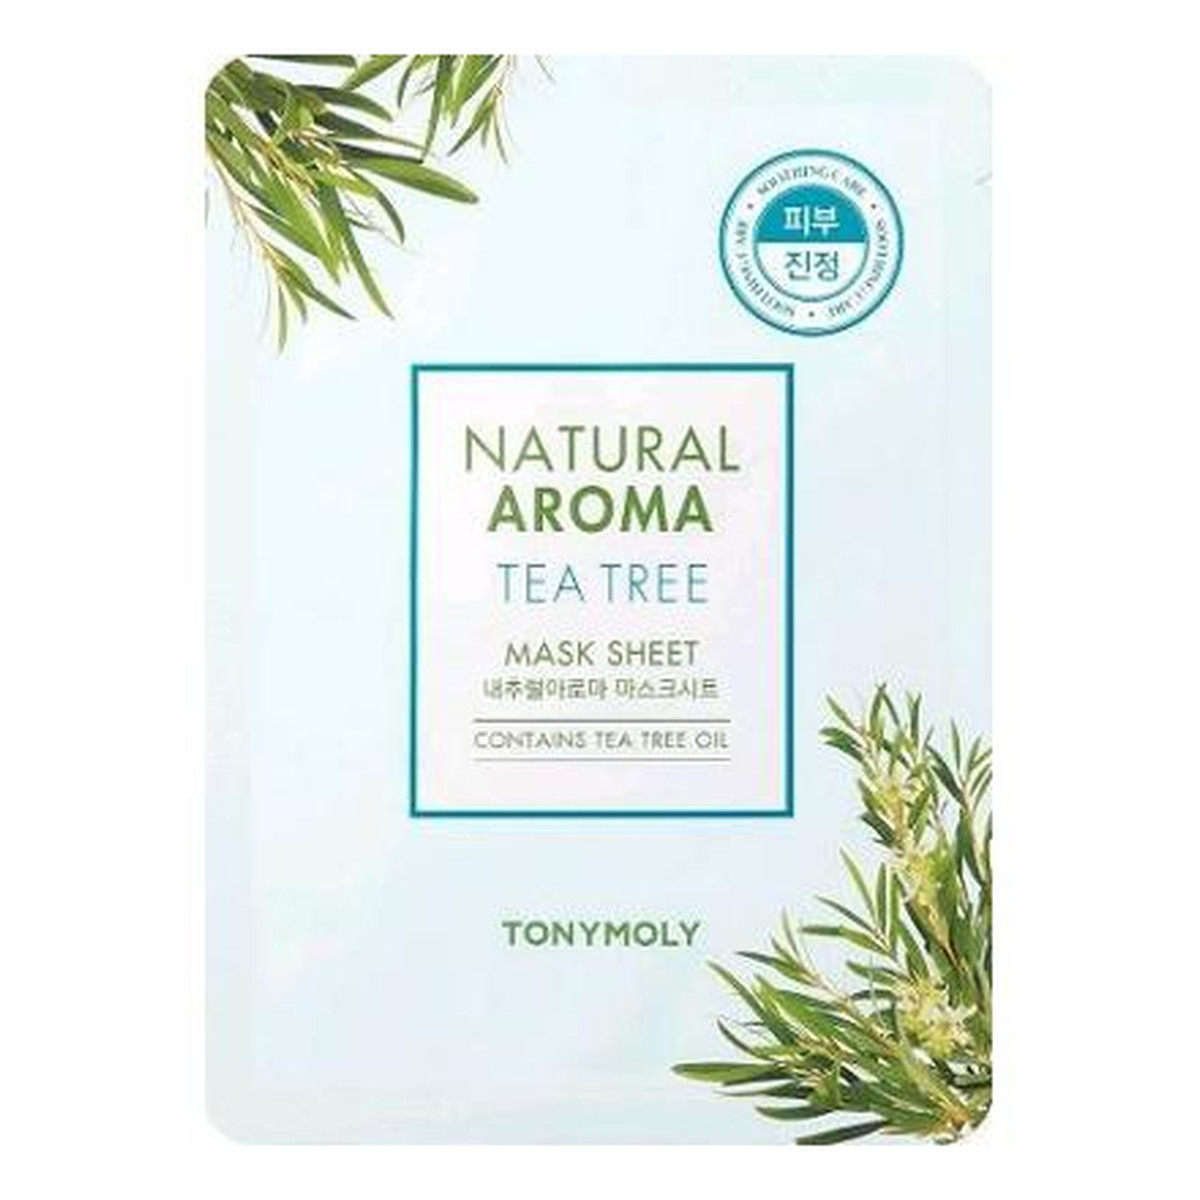 Tony Moly Natural Aroma Mask Sheet Tea Tree Oczyszczająca maska do twarzy 21g